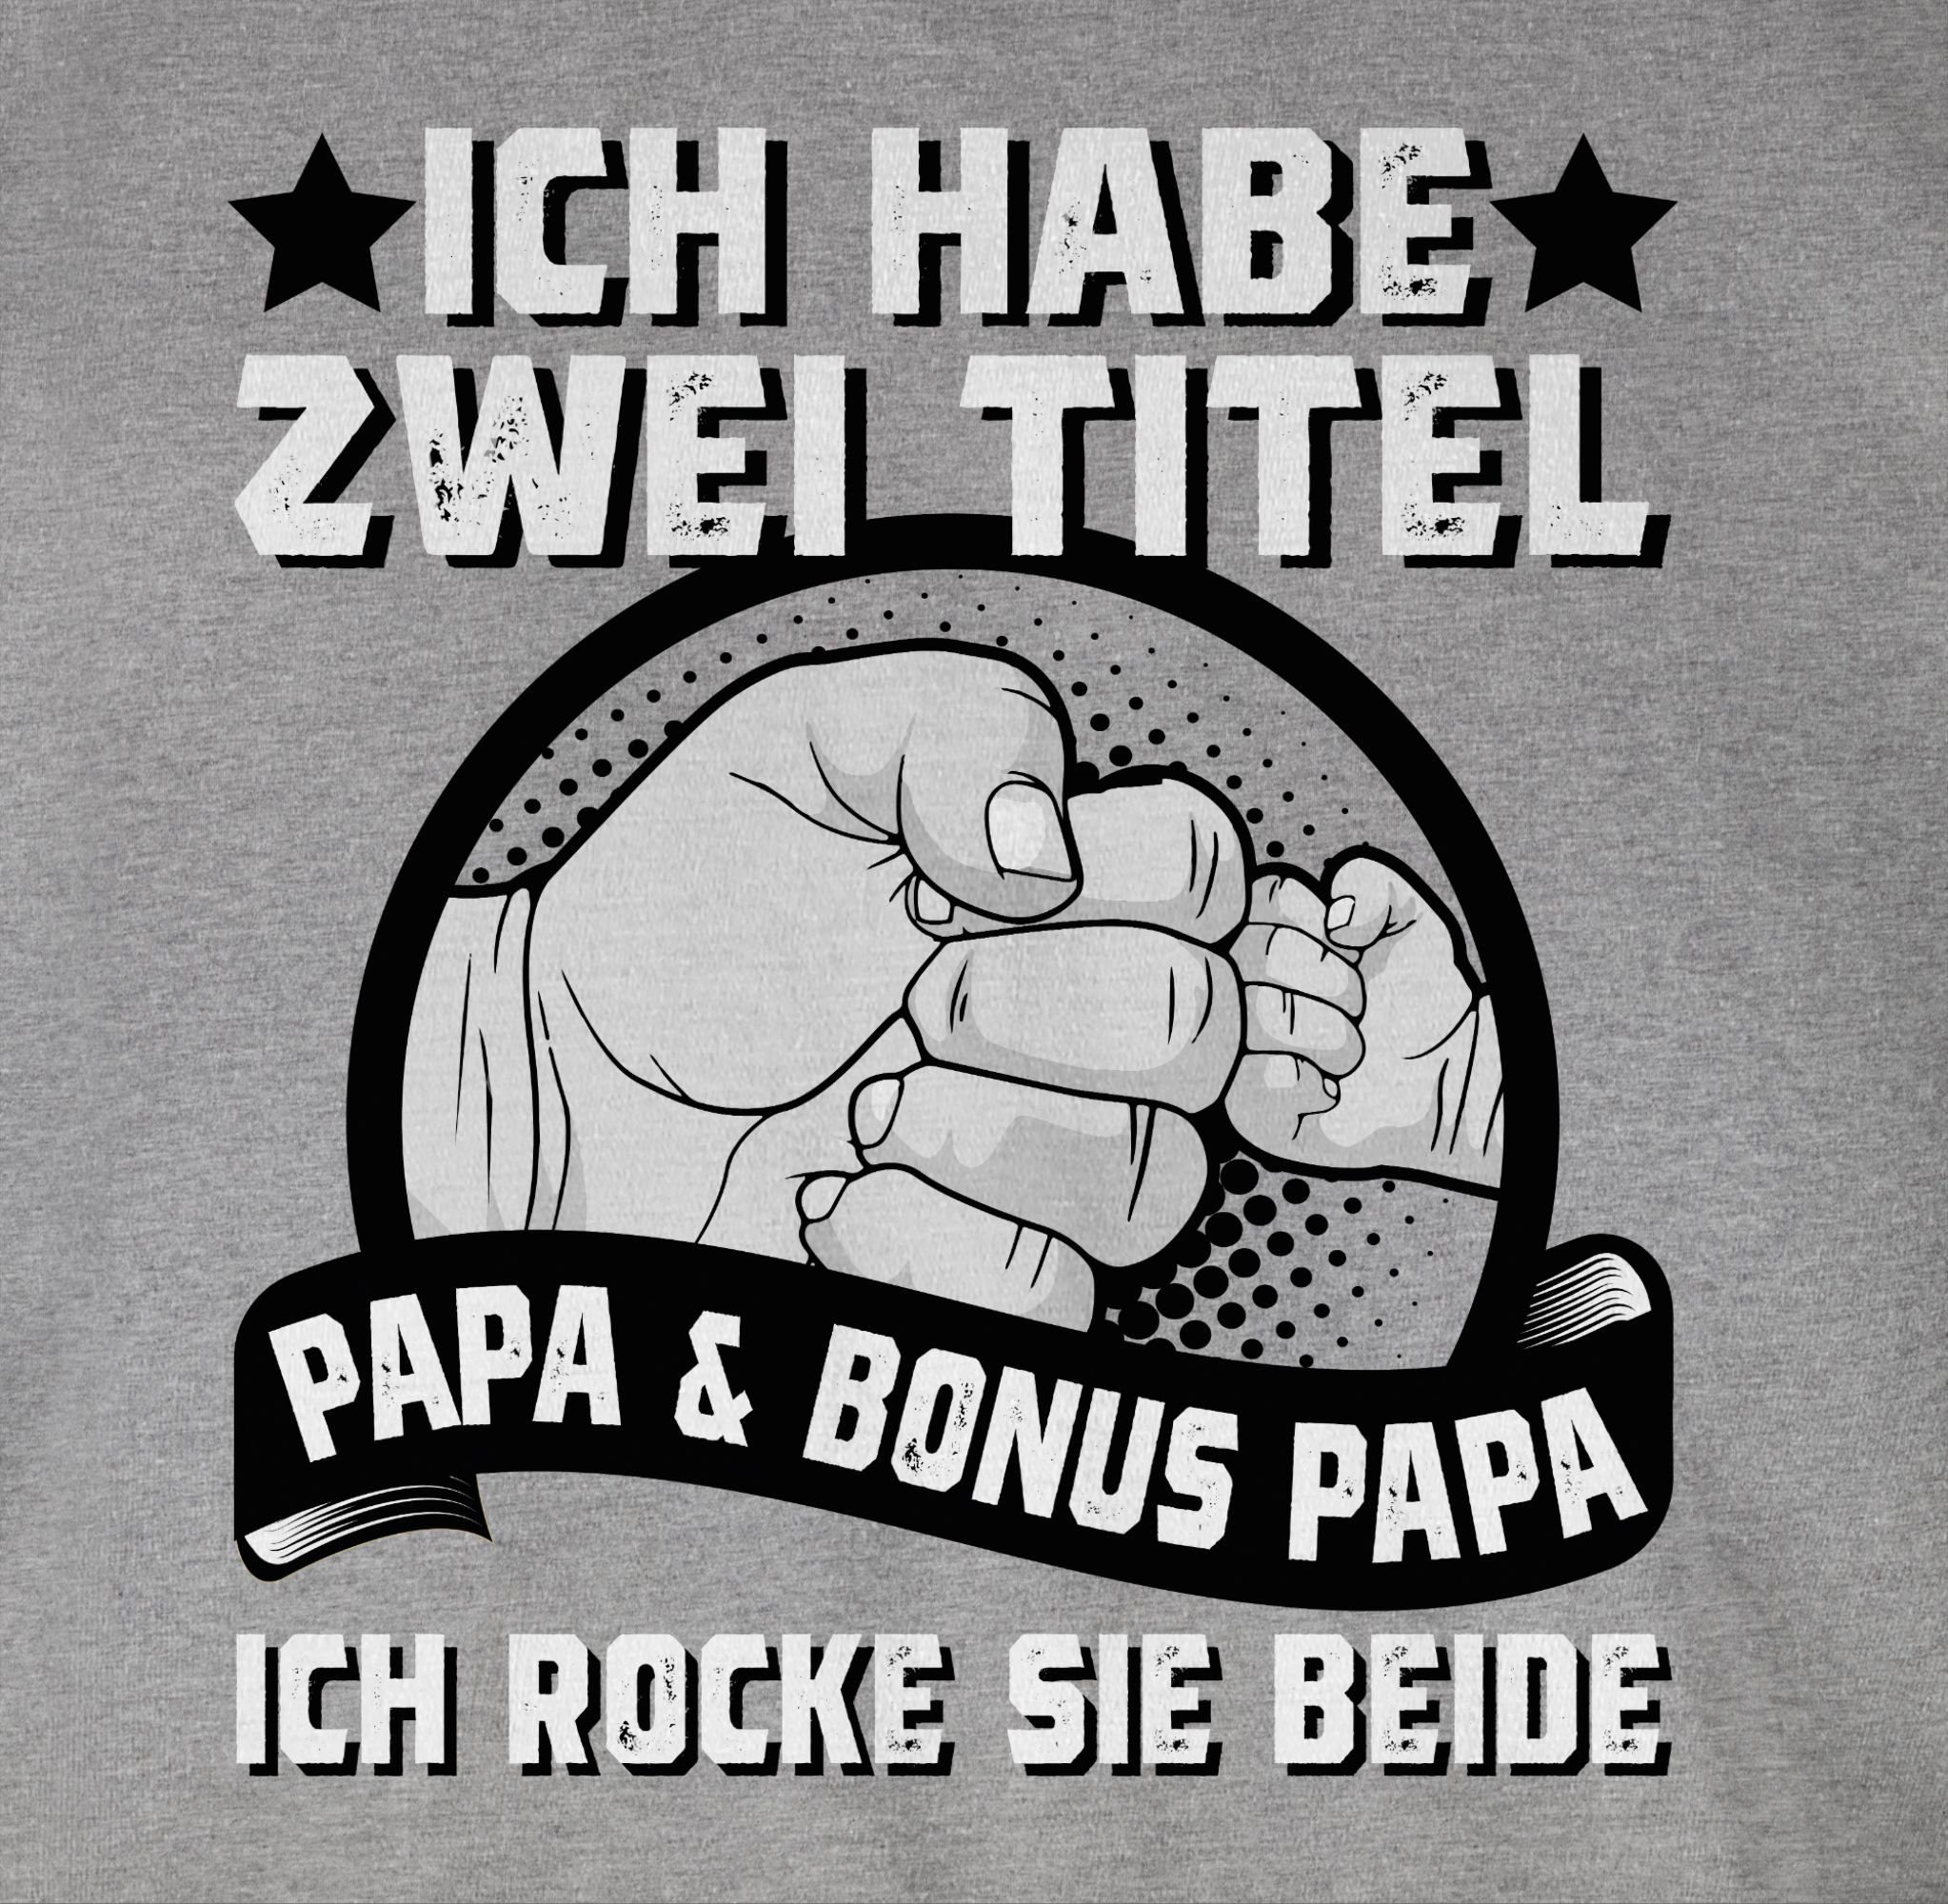 2 Titel zwei I Papa - und Papa für Vatertag Shirtracer Grau habe Papa Geschenk meliert Ich Stiefvater T-Shirt Bonus